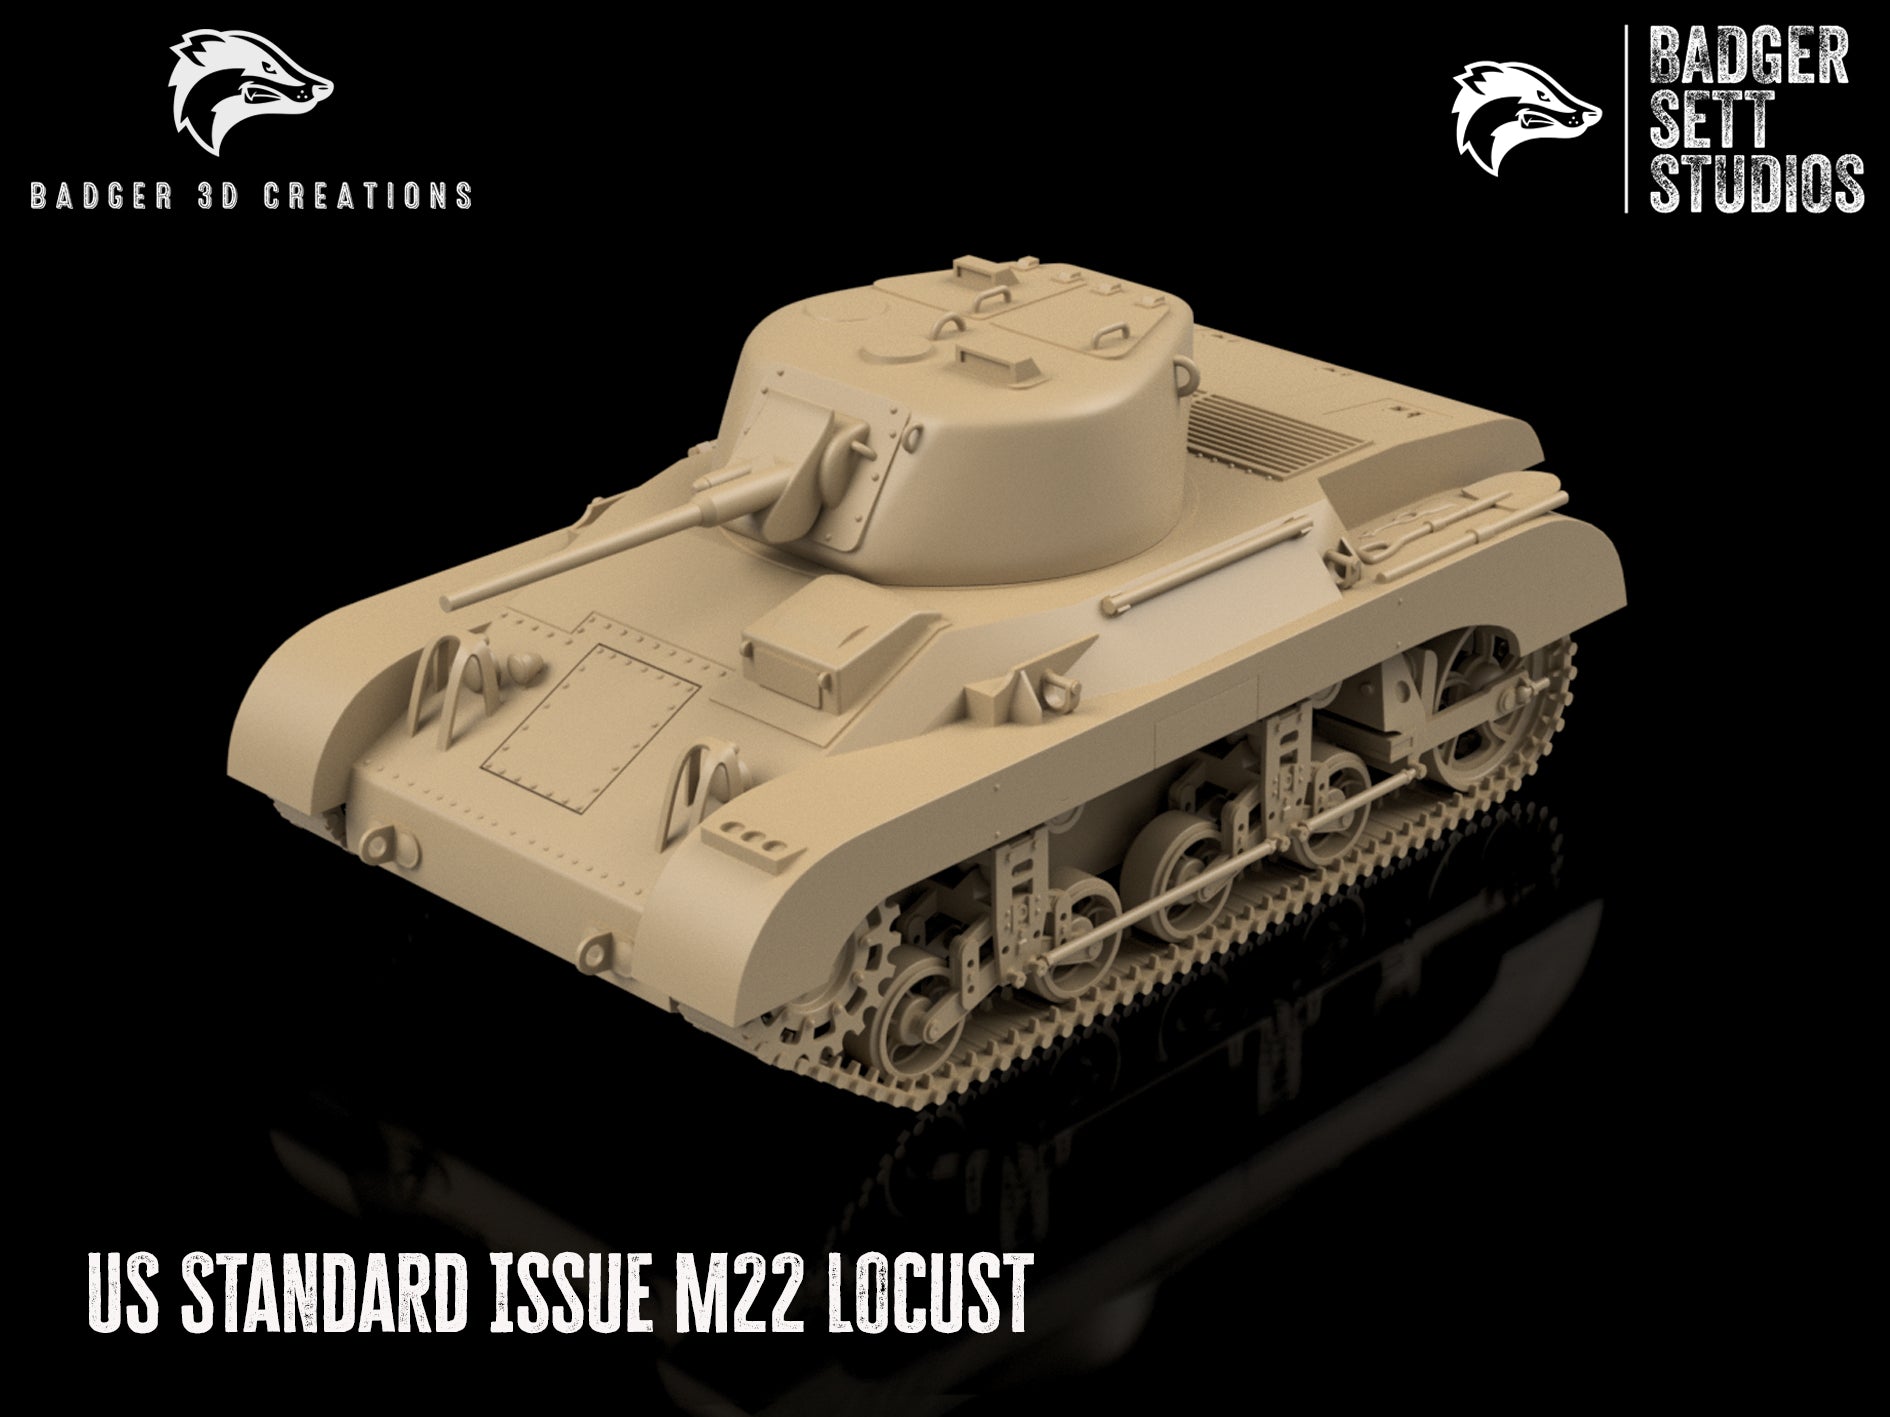 US Standard Issue M22 Locust